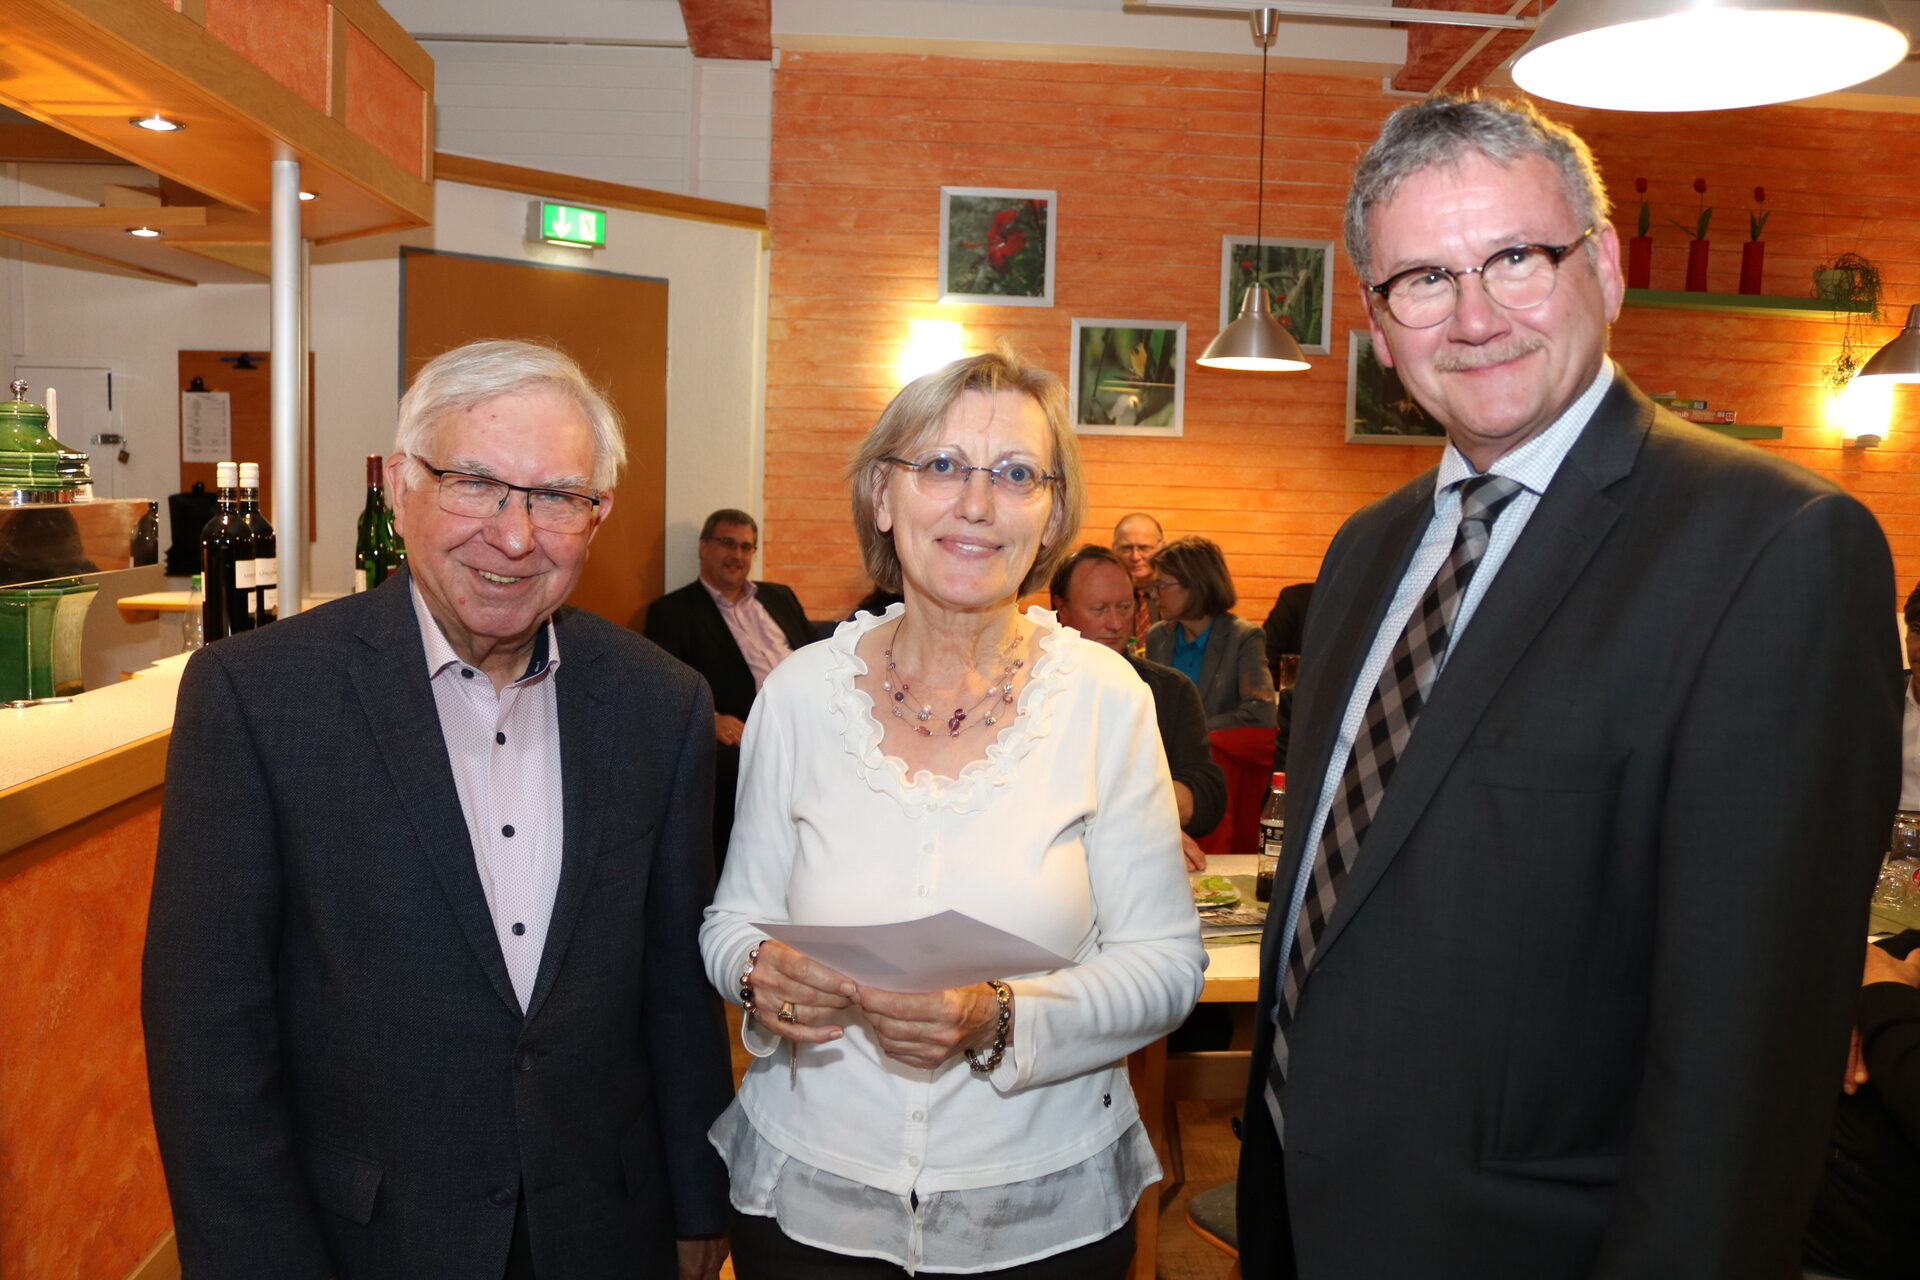 Jutta Glöckner aus Ahnatal arbeitet ehrenamtlich im Kontaktladen in Kassel. Zu den Gratulanten gehörte auch Ewald Griesel, der Erste Beigeordnete der Gemeinde.